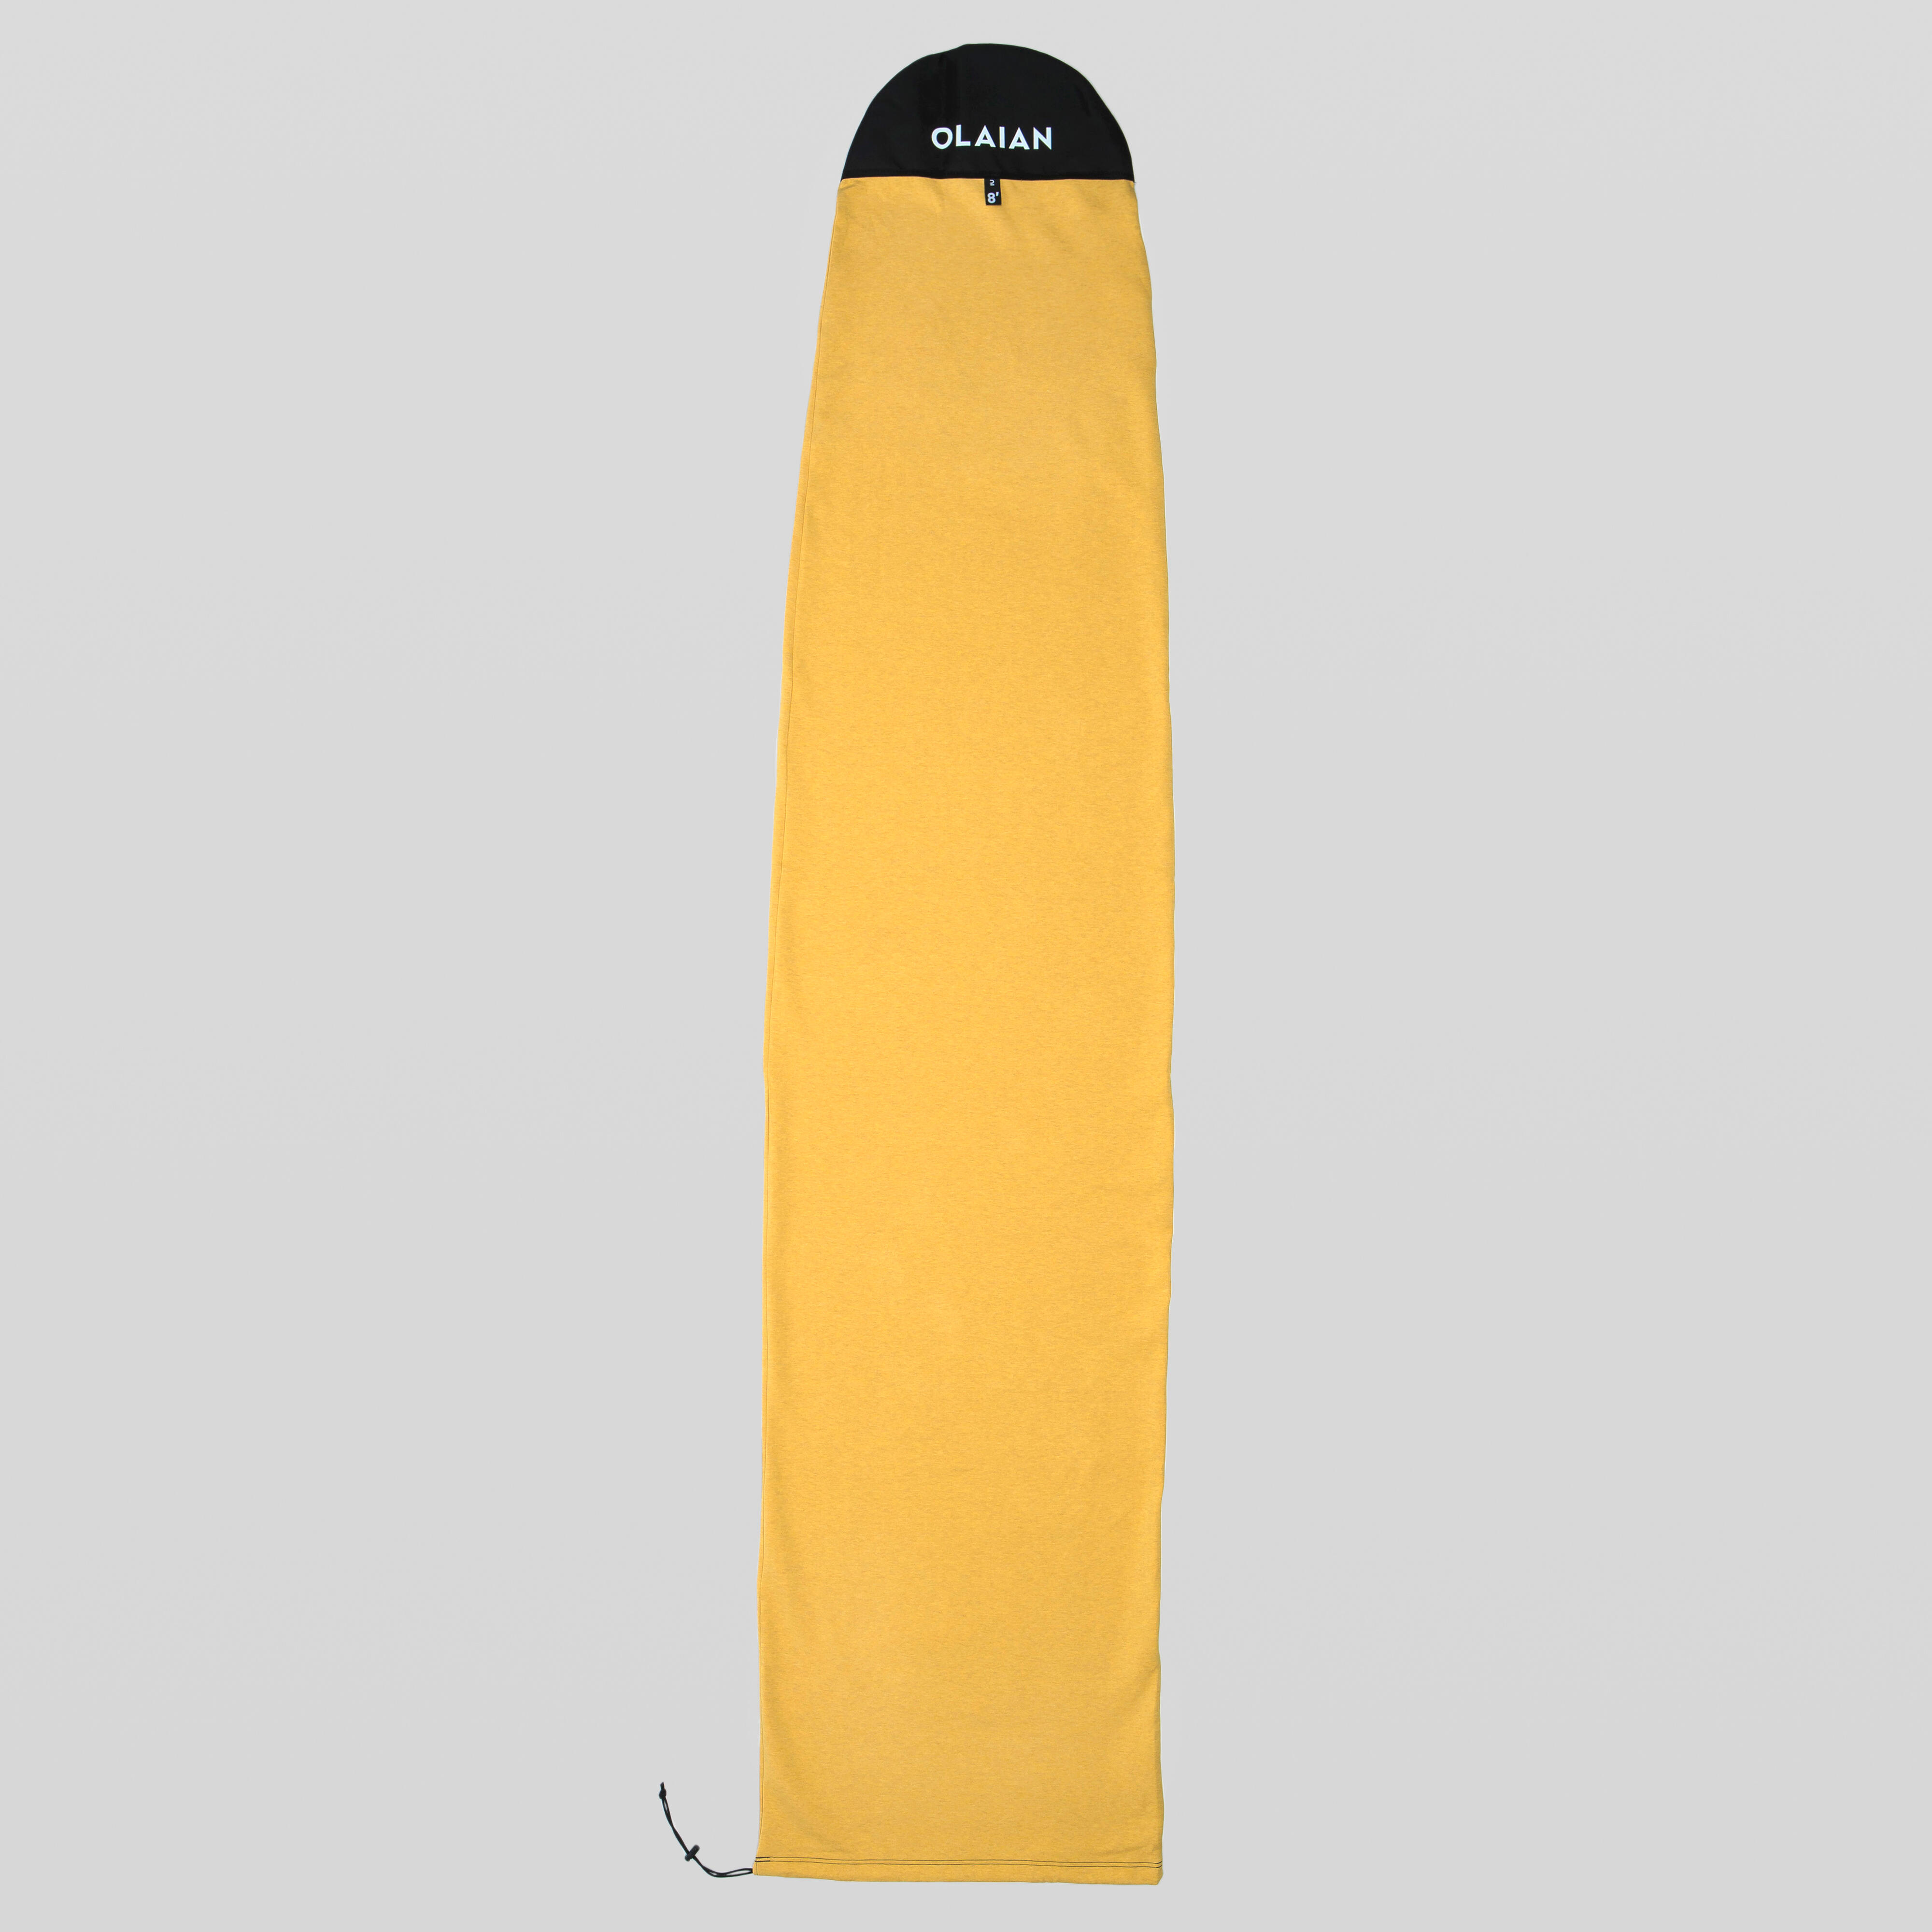 Husă Placă Surf Mărime Maximă 8’2” 8'2"  Accesorii surf